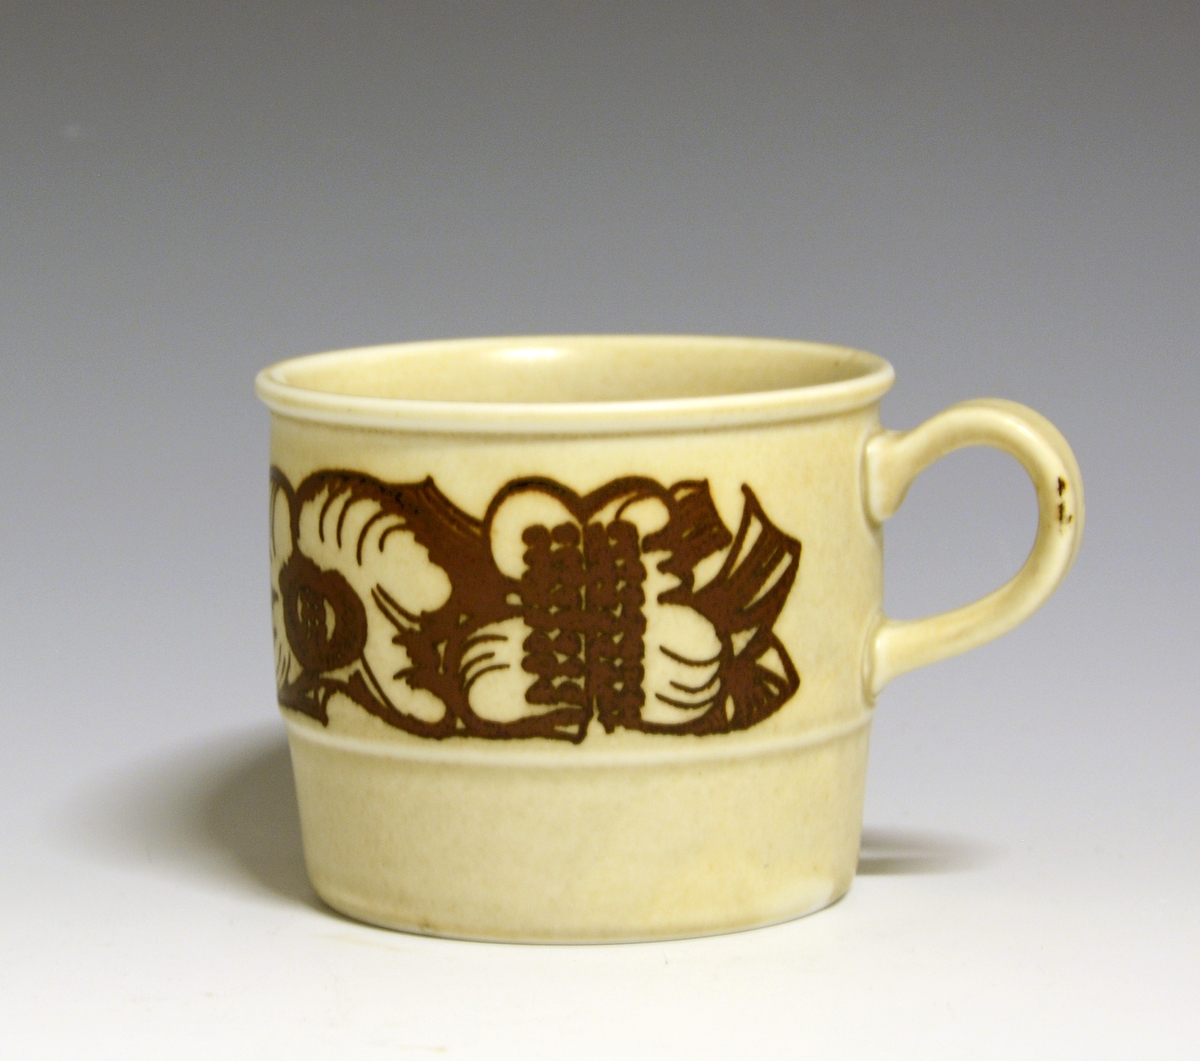 Kaffekopp i porselen, "Troll". Modell 2440, dekor 88278. Beige, med dekor i mørk brunt i en bord.